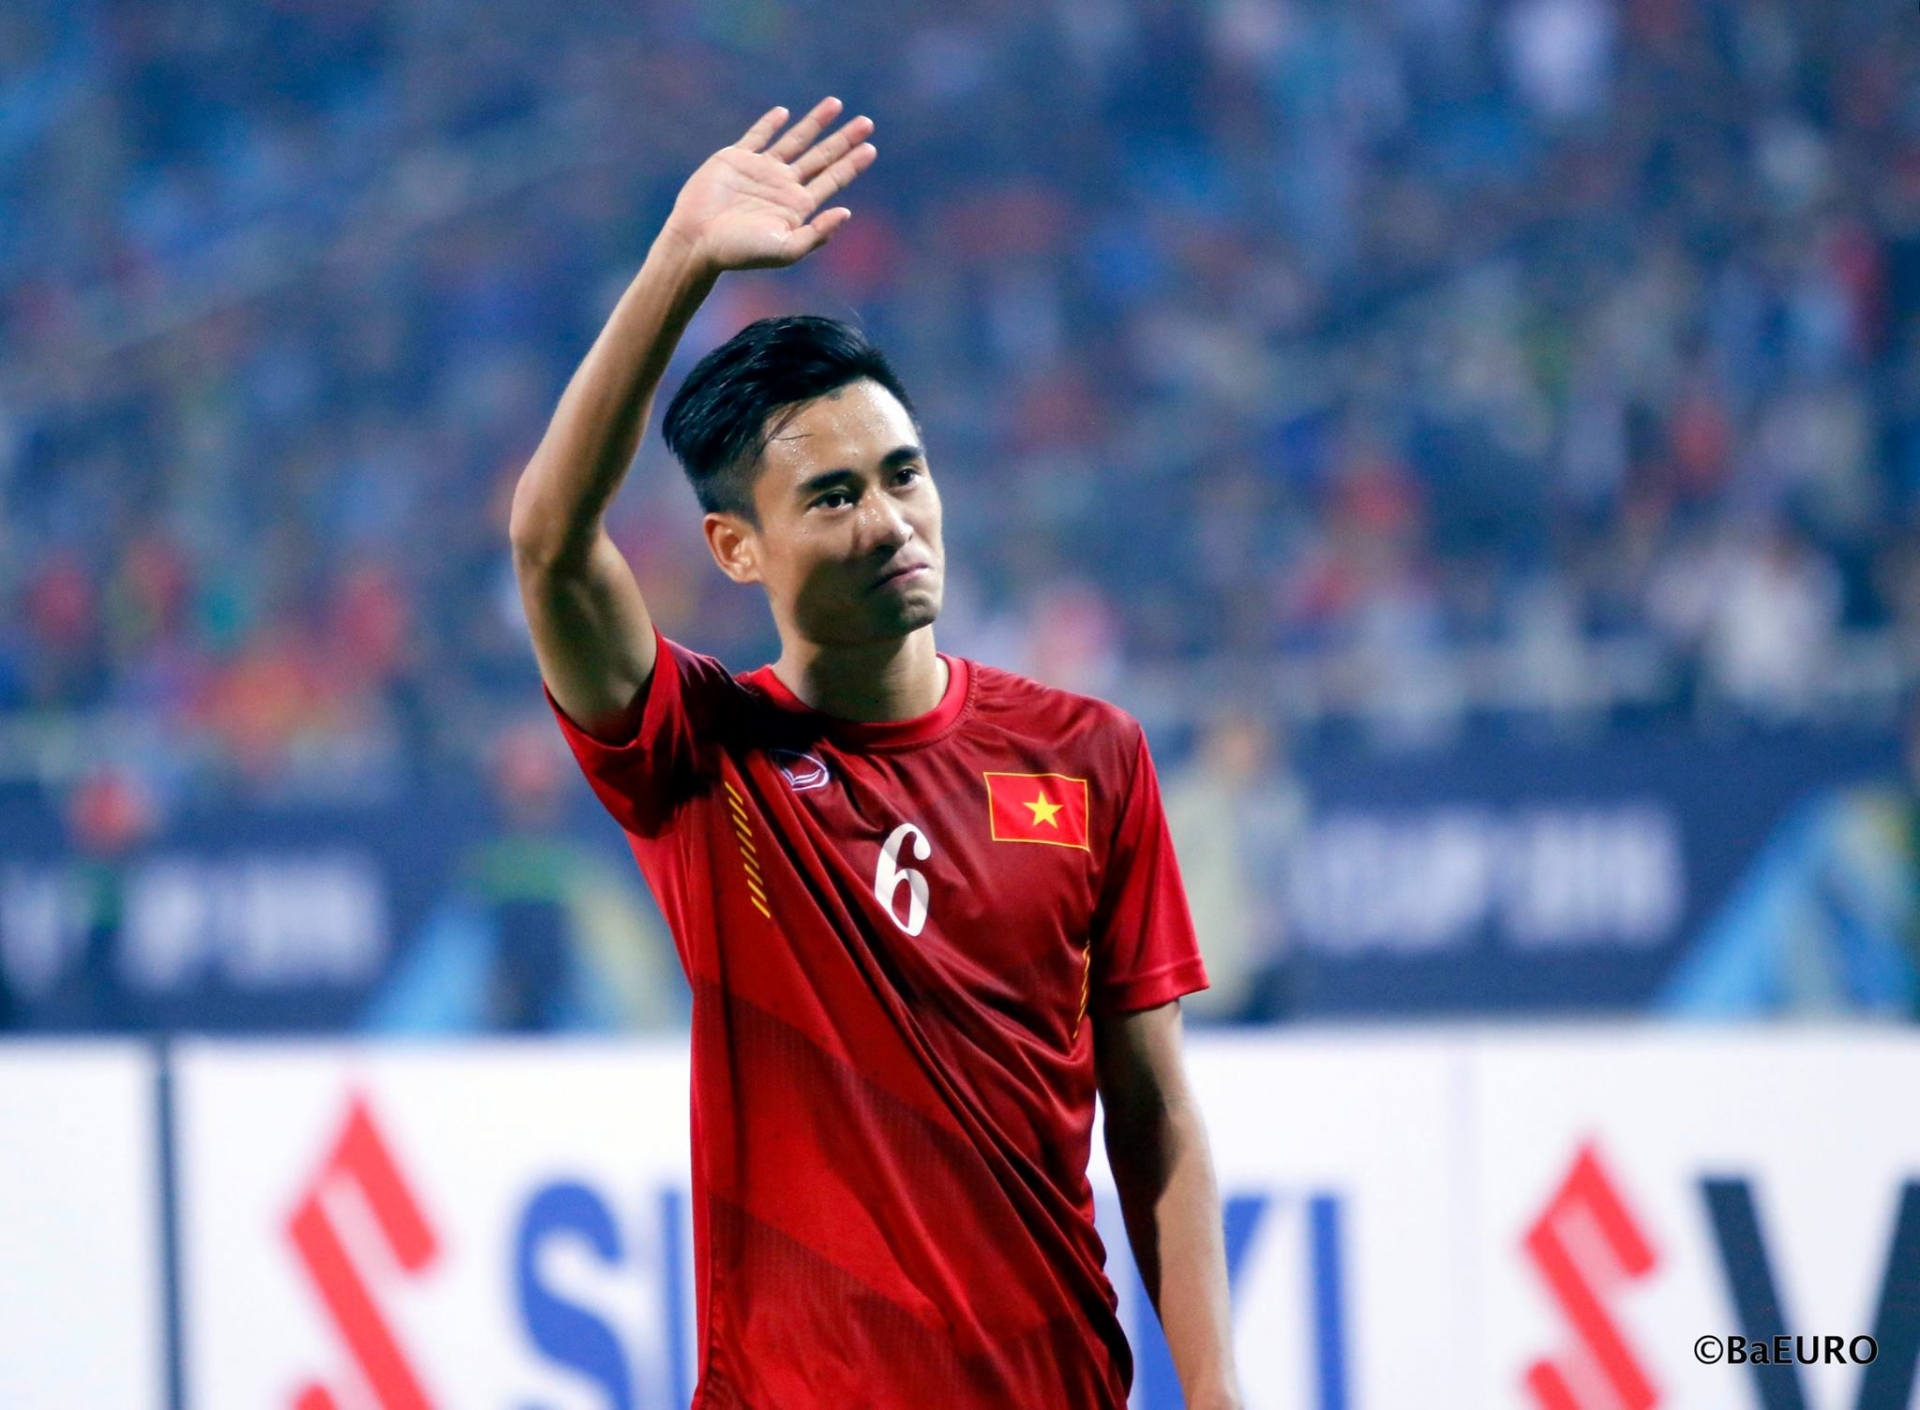 Trước thời ông Park, Vũ Minh Tuấn là tiền vệ hàng đầu của ĐT Việt Nam. Vũ Minh Tuấn từng gây xúc động mạnh với bàn thắng vào lưới Indonesia để tưởng nhớ đến người cha đã mất của mình.